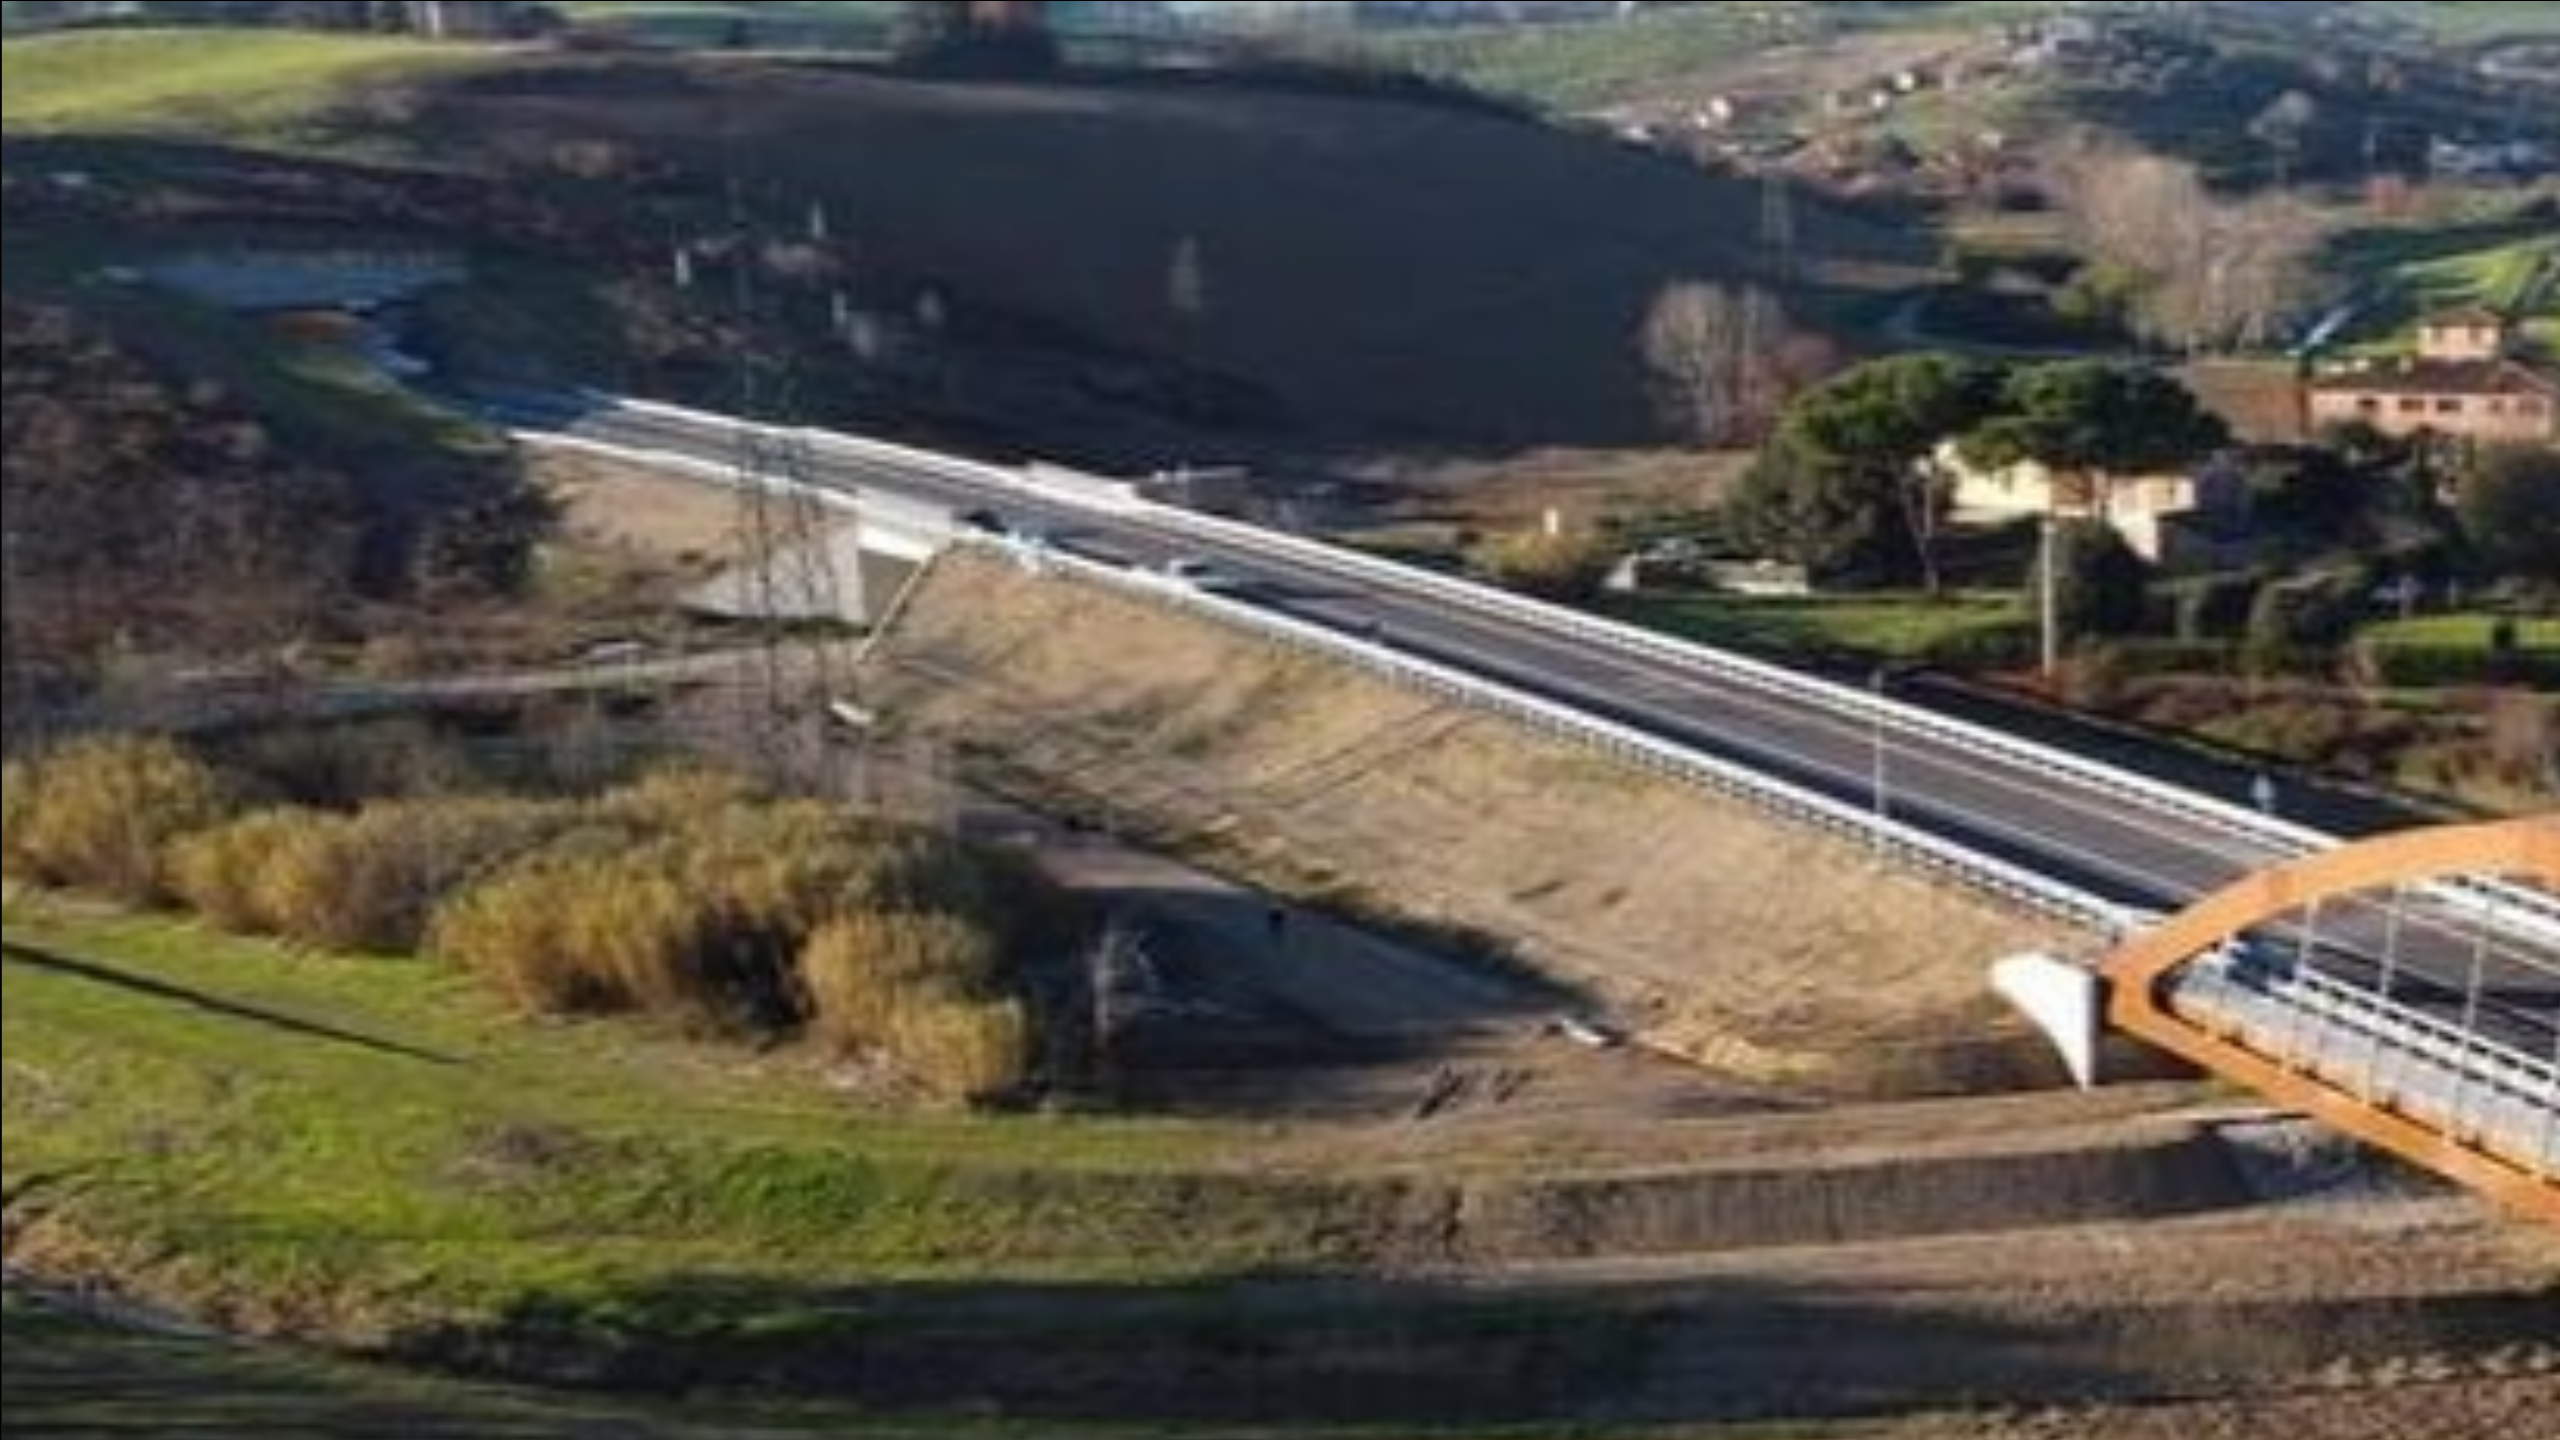 Delibera della Giunta regionale assegna 11,7 milioni di euro per la manutenzione di ponti su strade toscane